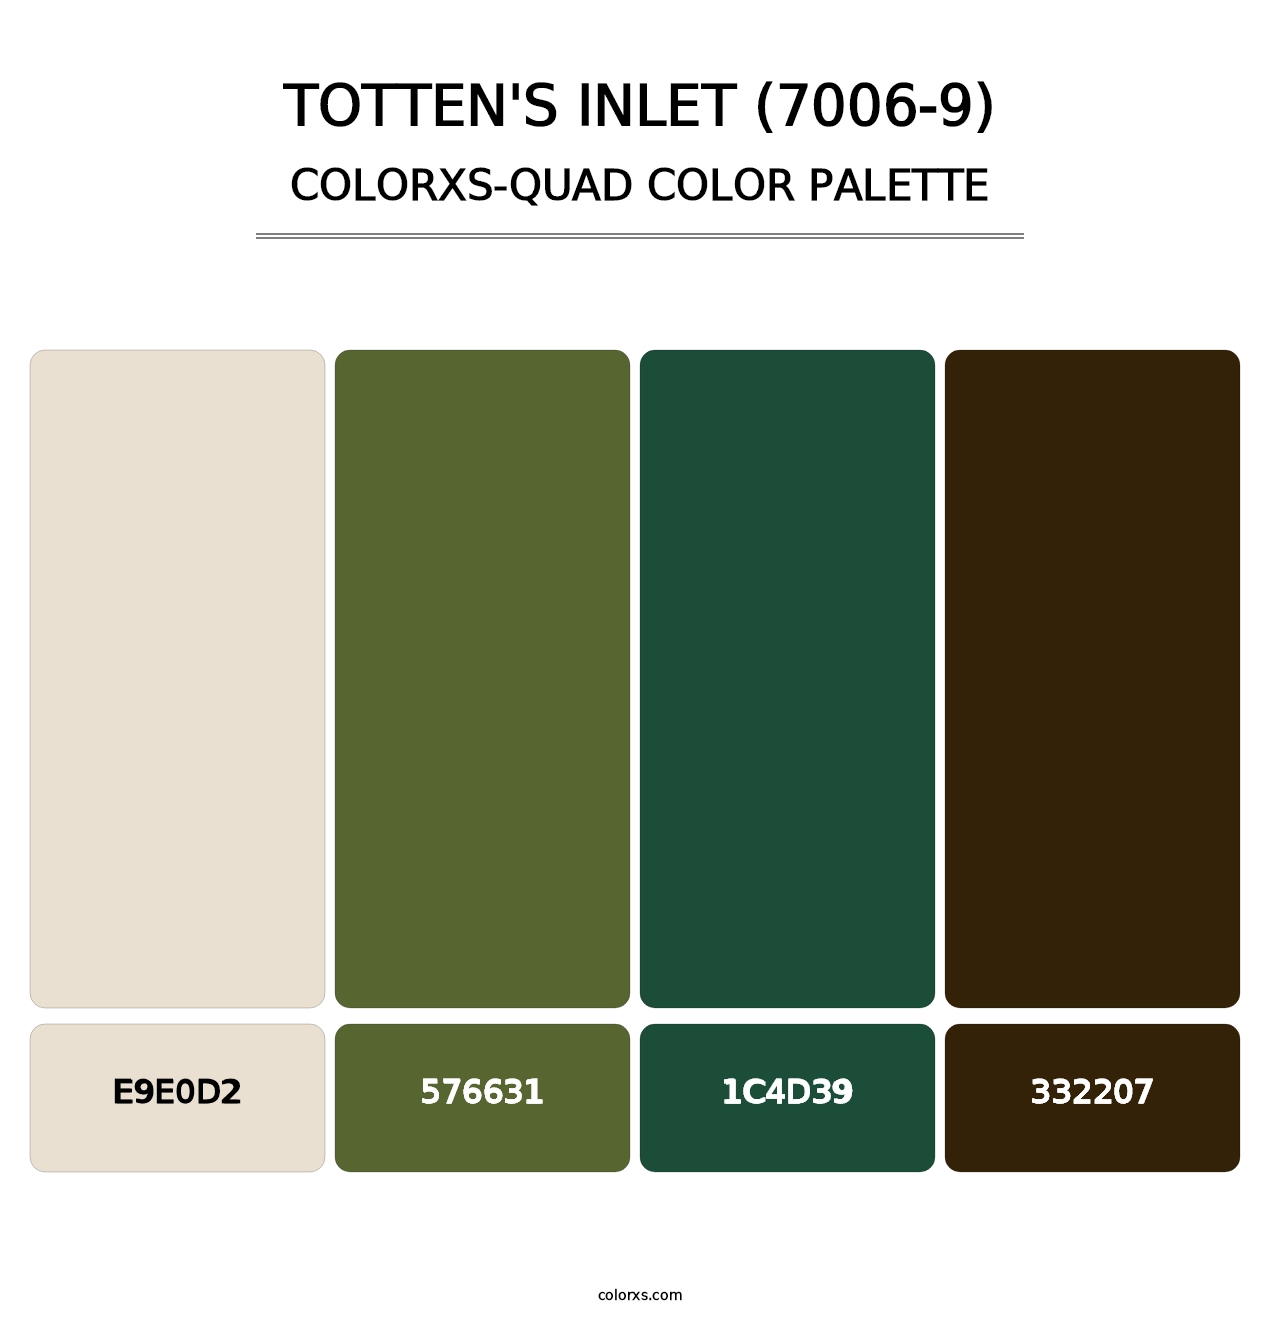 Totten's Inlet (7006-9) - Colorxs Quad Palette